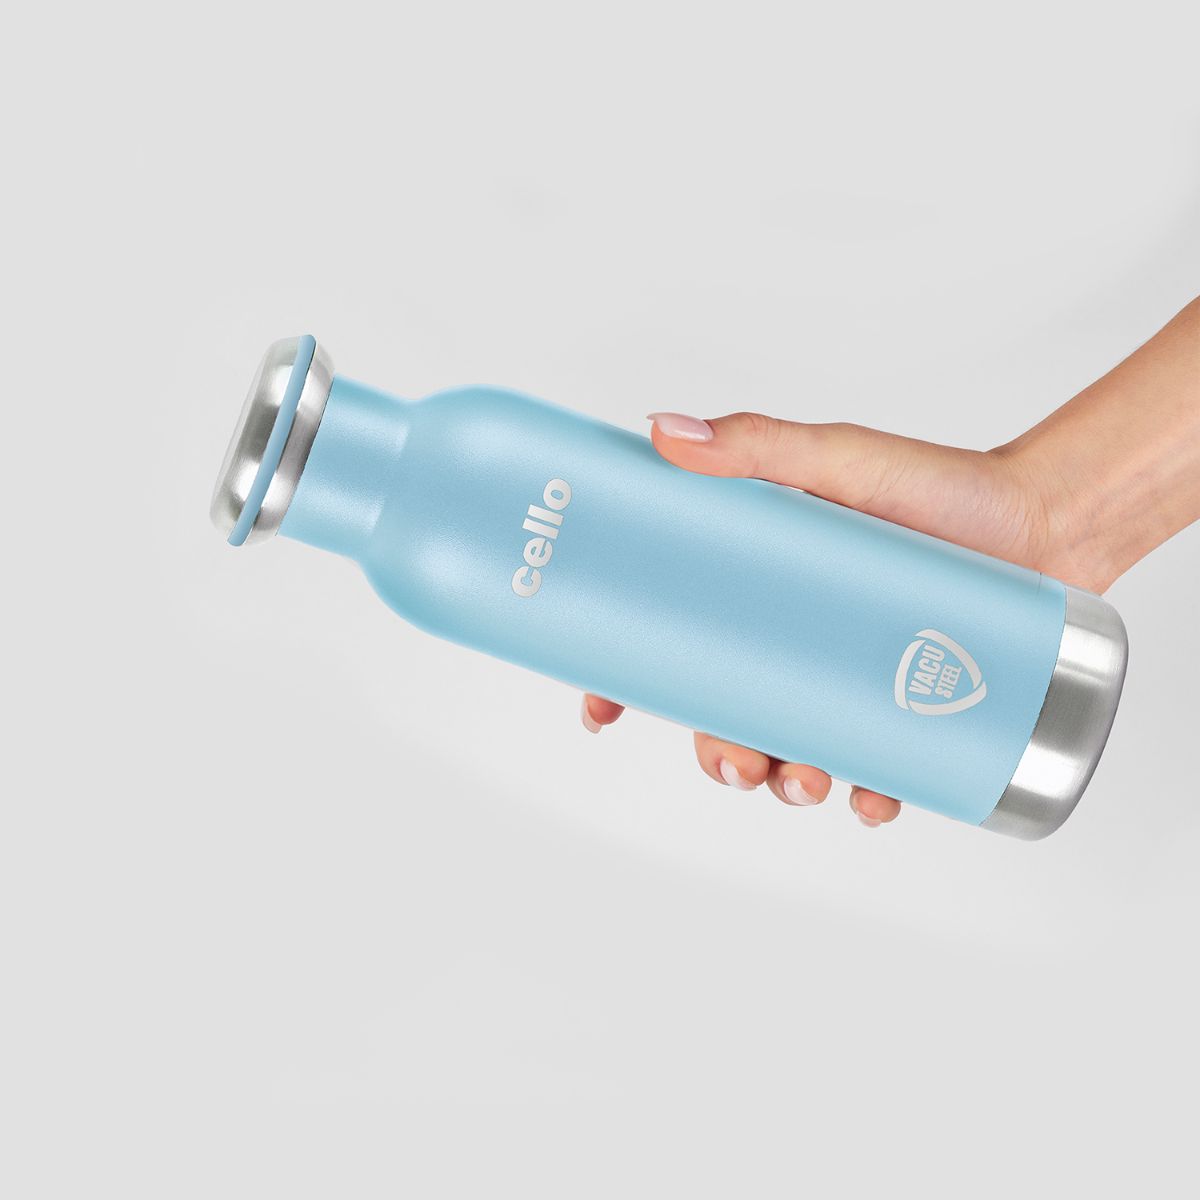 Duro Sip Flask, Vacusteel Water Bottle, 600ml Blue / 600ml